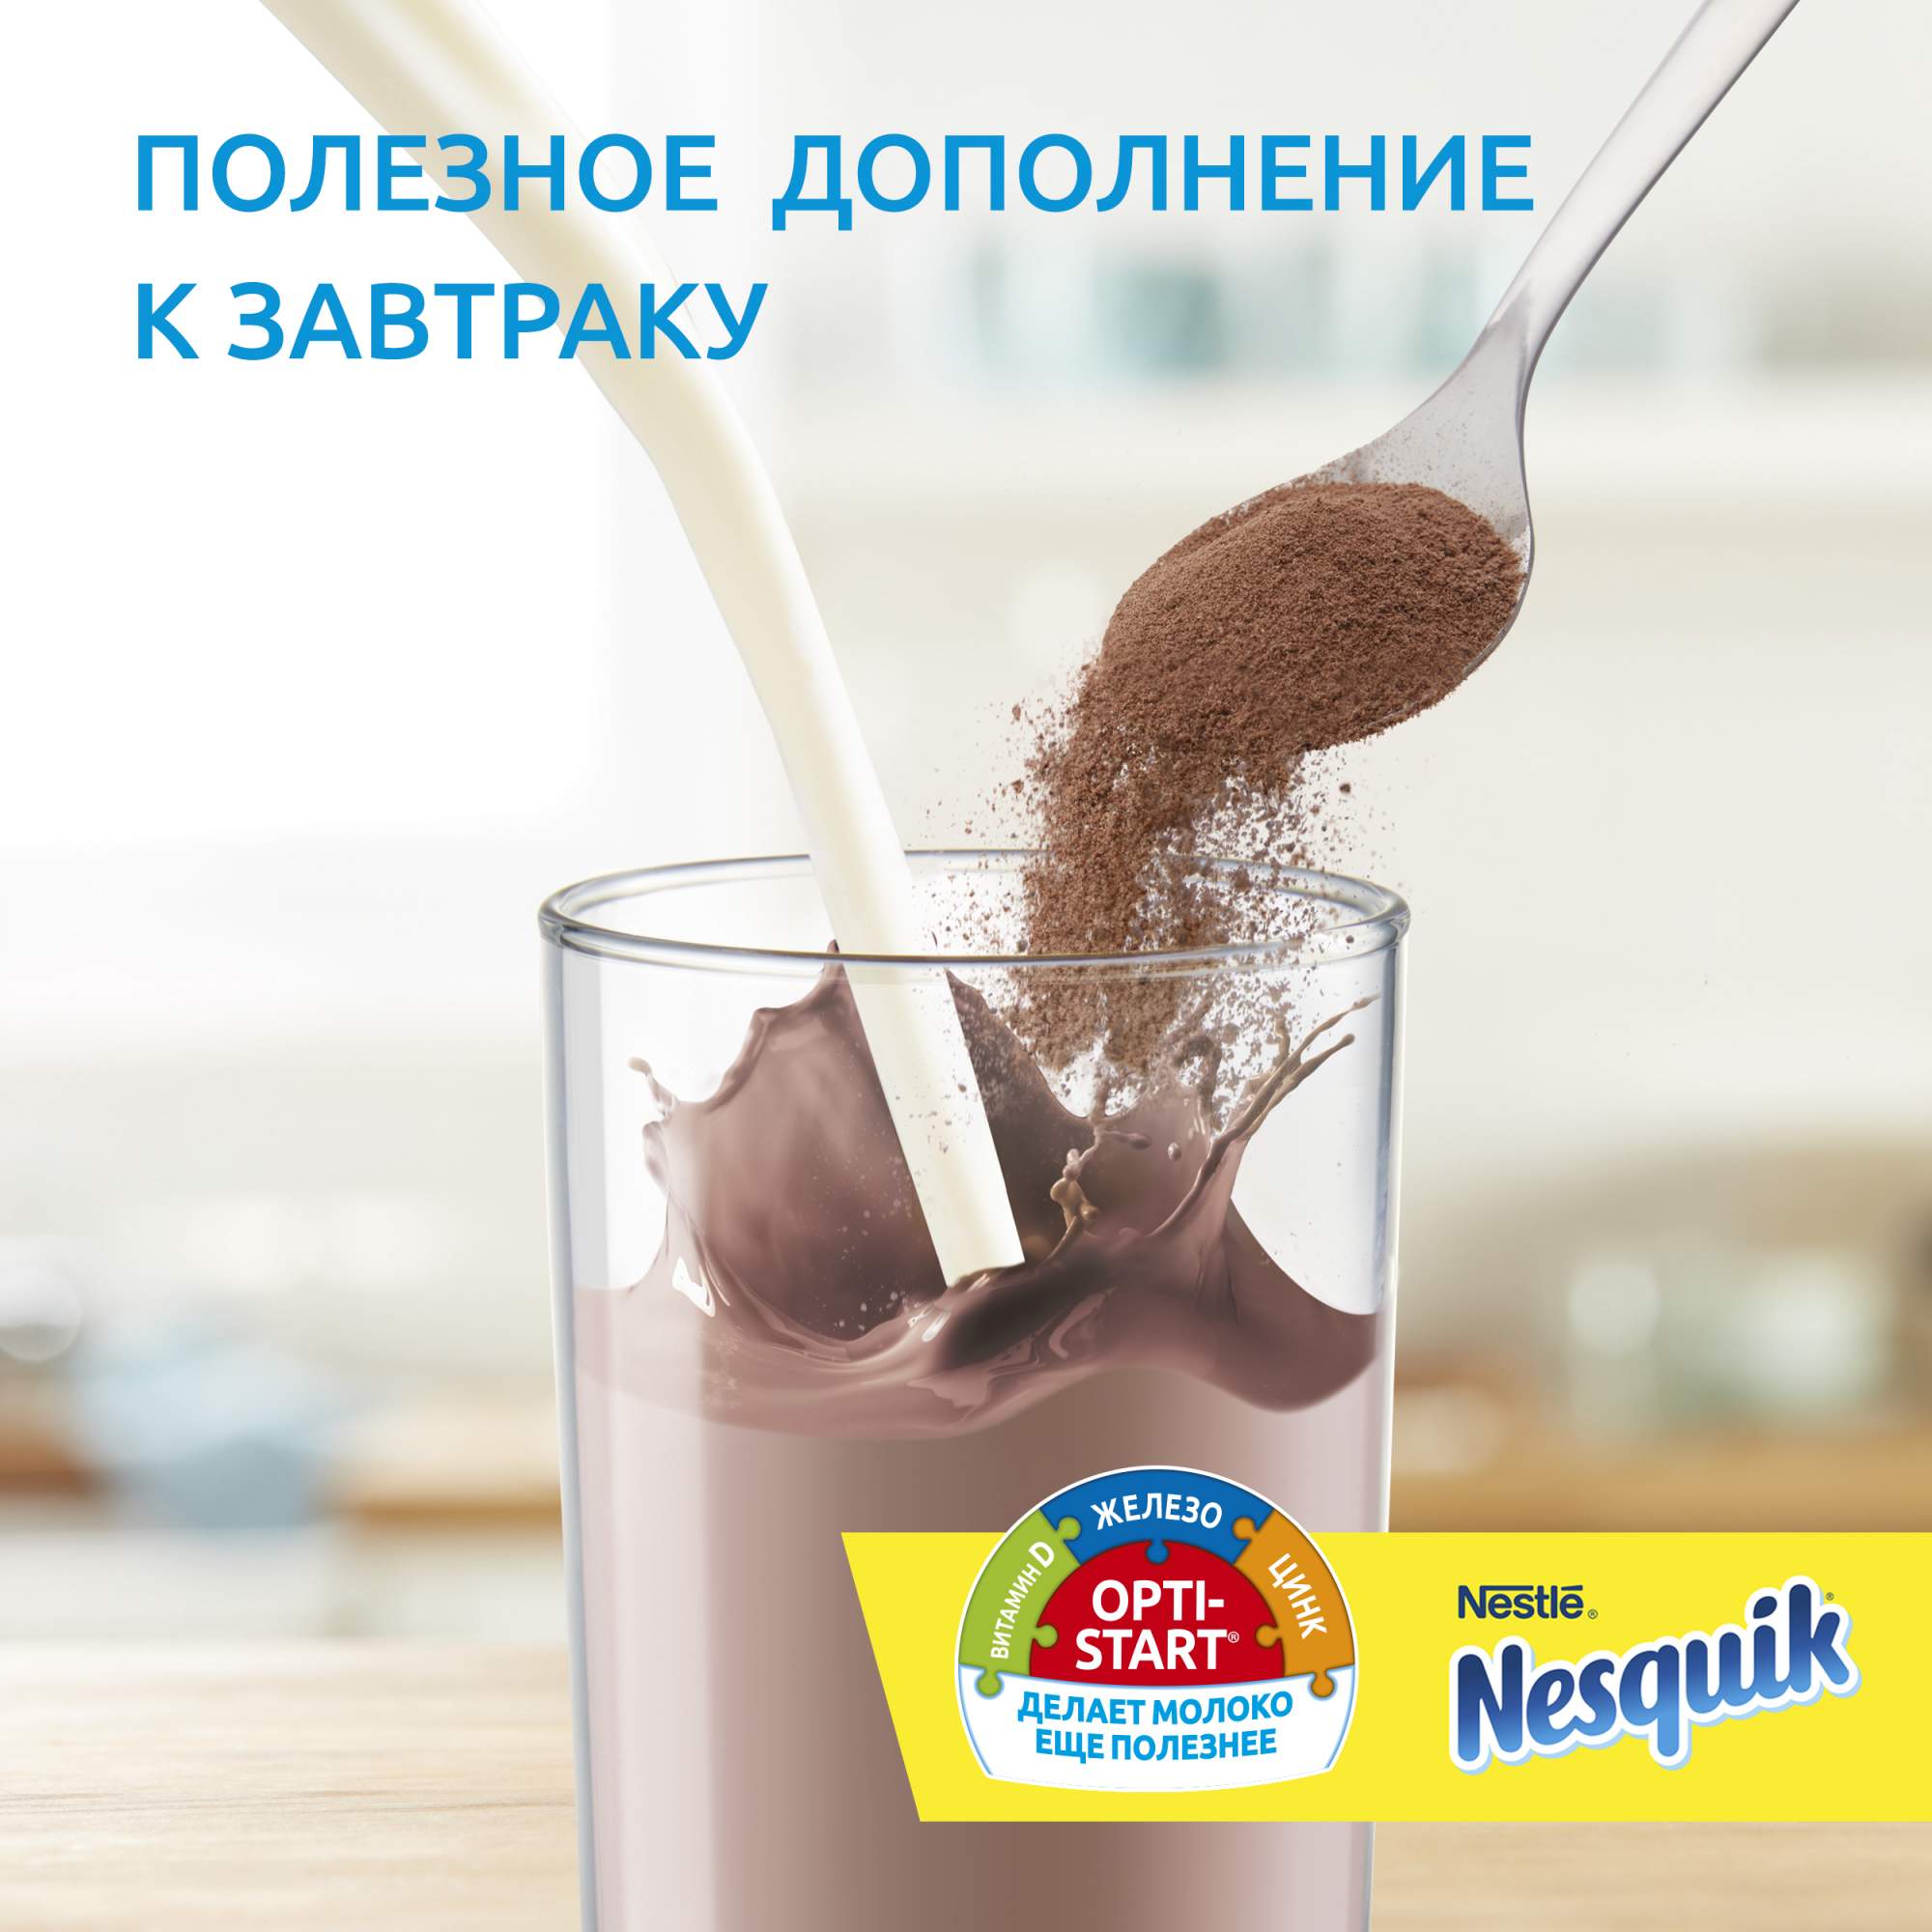 Какао-напиток Nesquik nestle opti-start быстрорастворимый в пакете 250 г